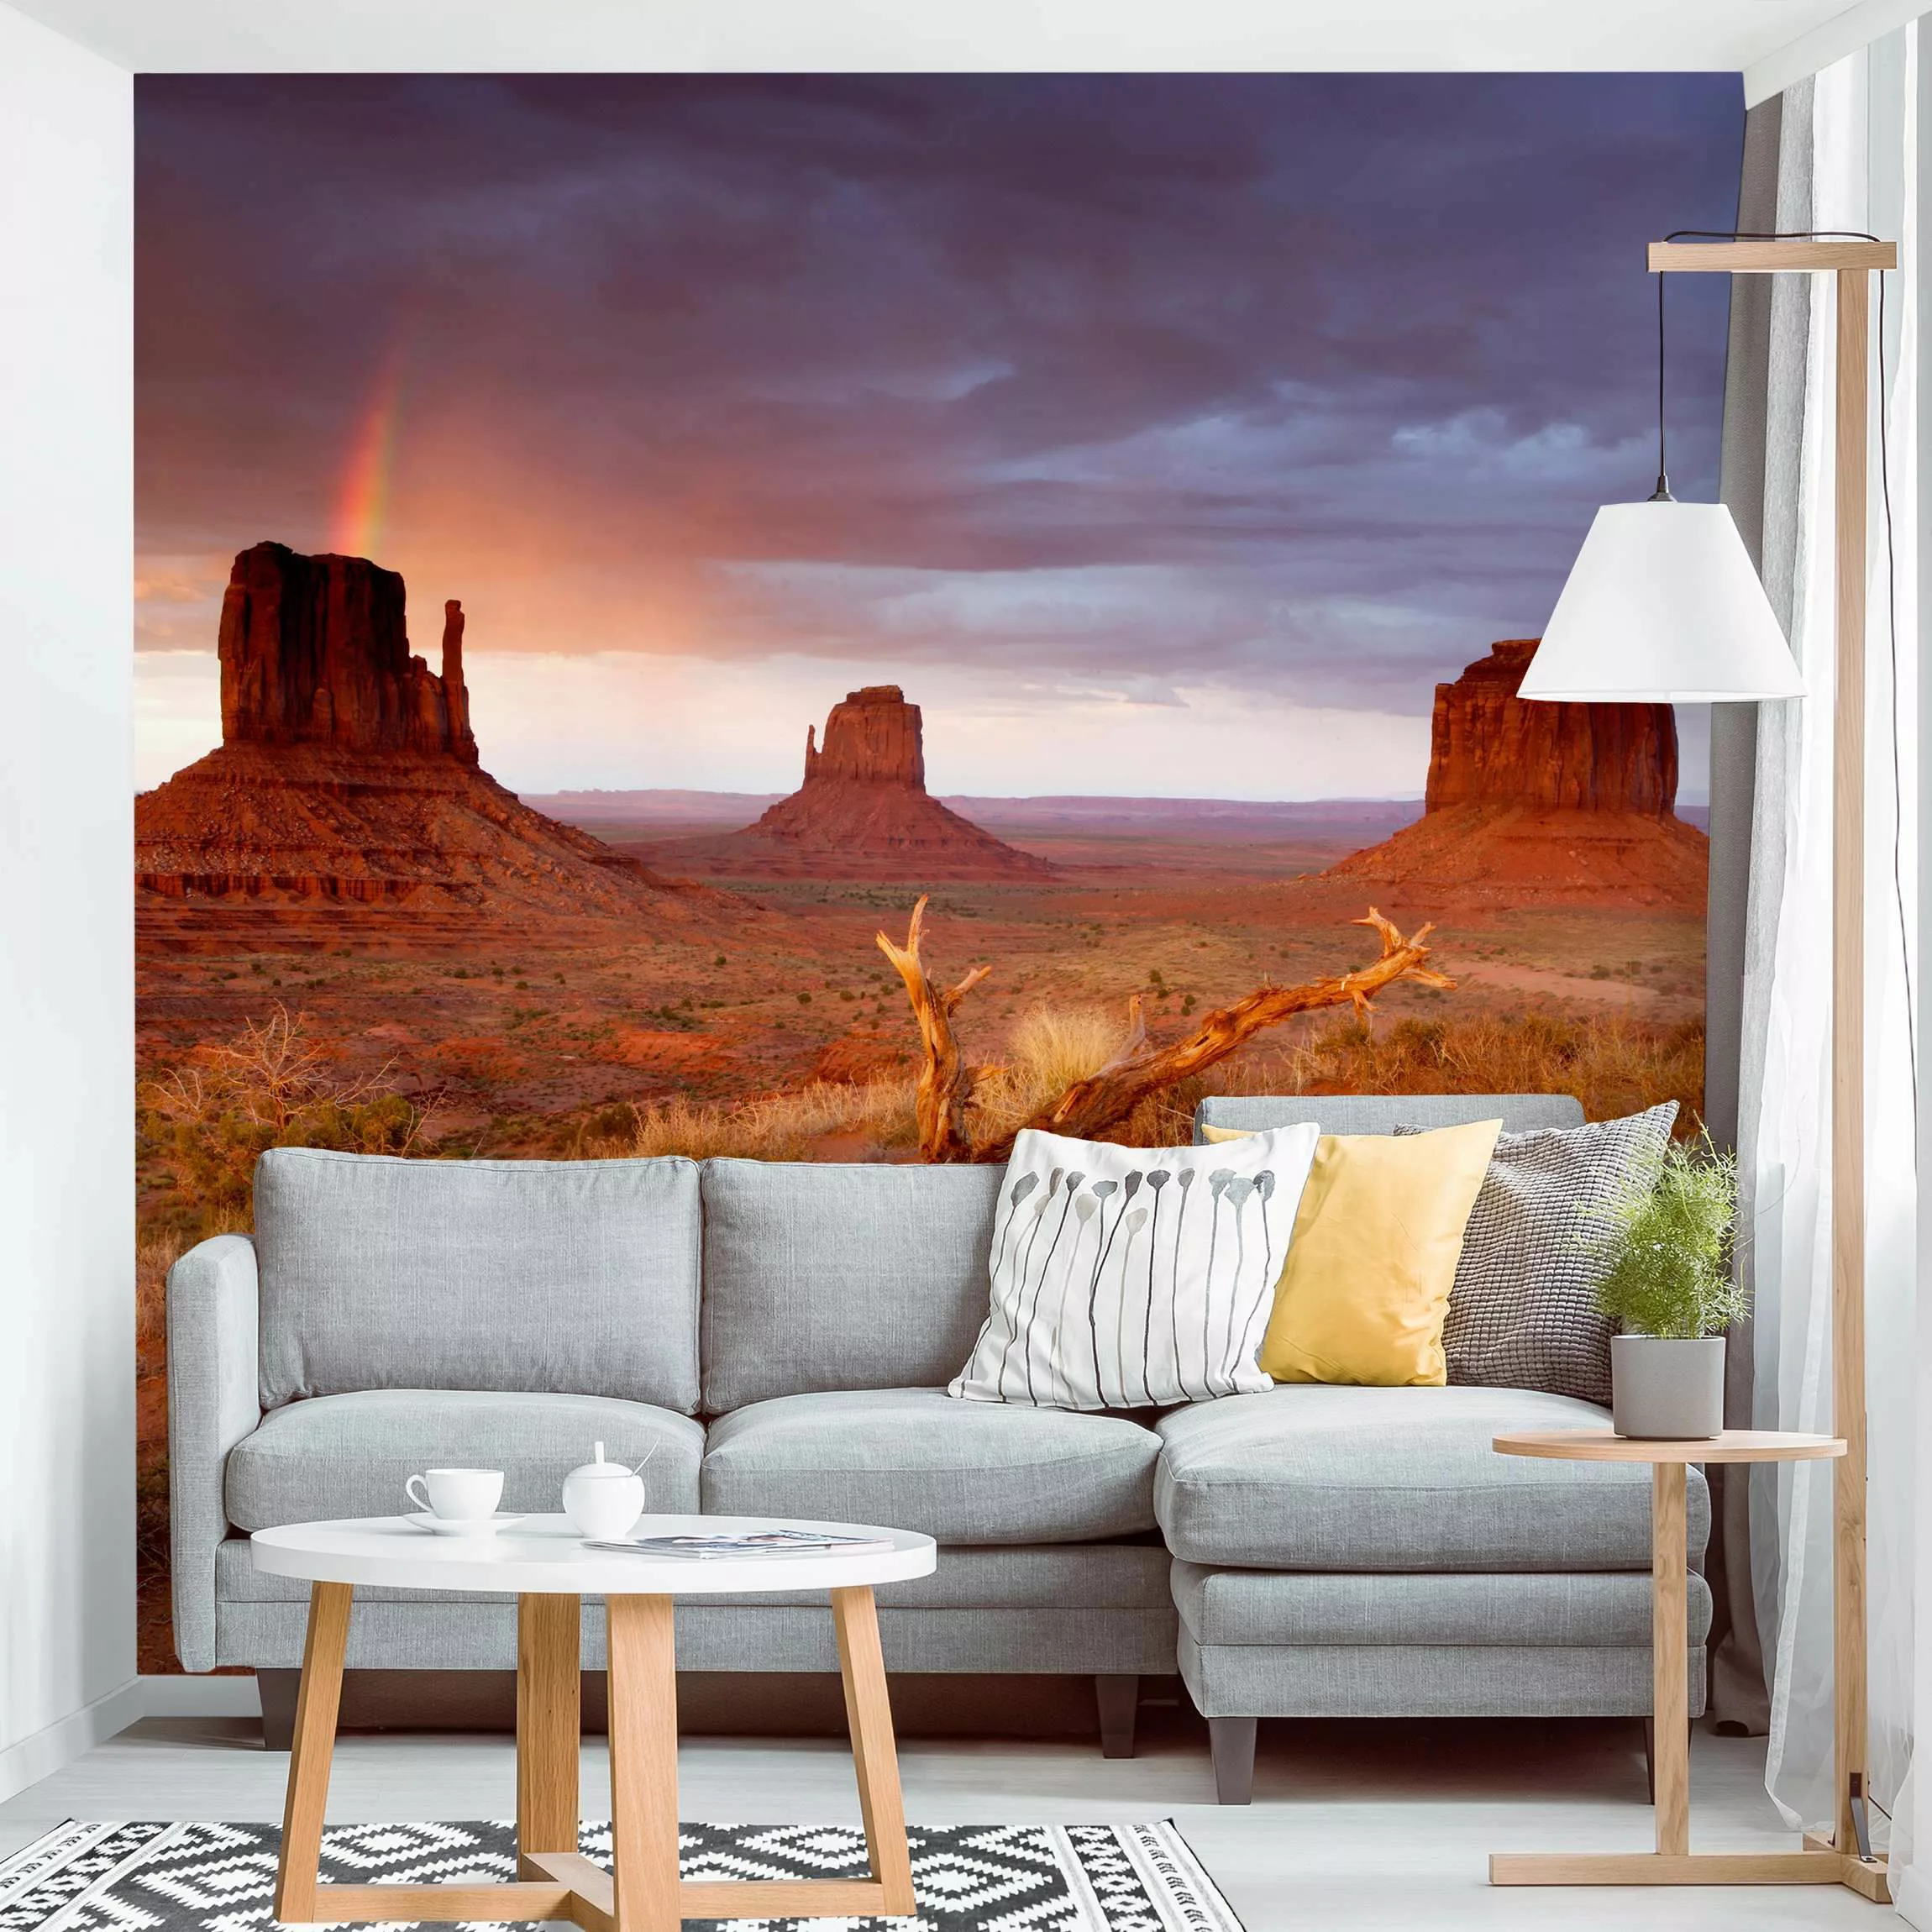 Fototapete Monument Valley bei Sonnenuntergang günstig online kaufen